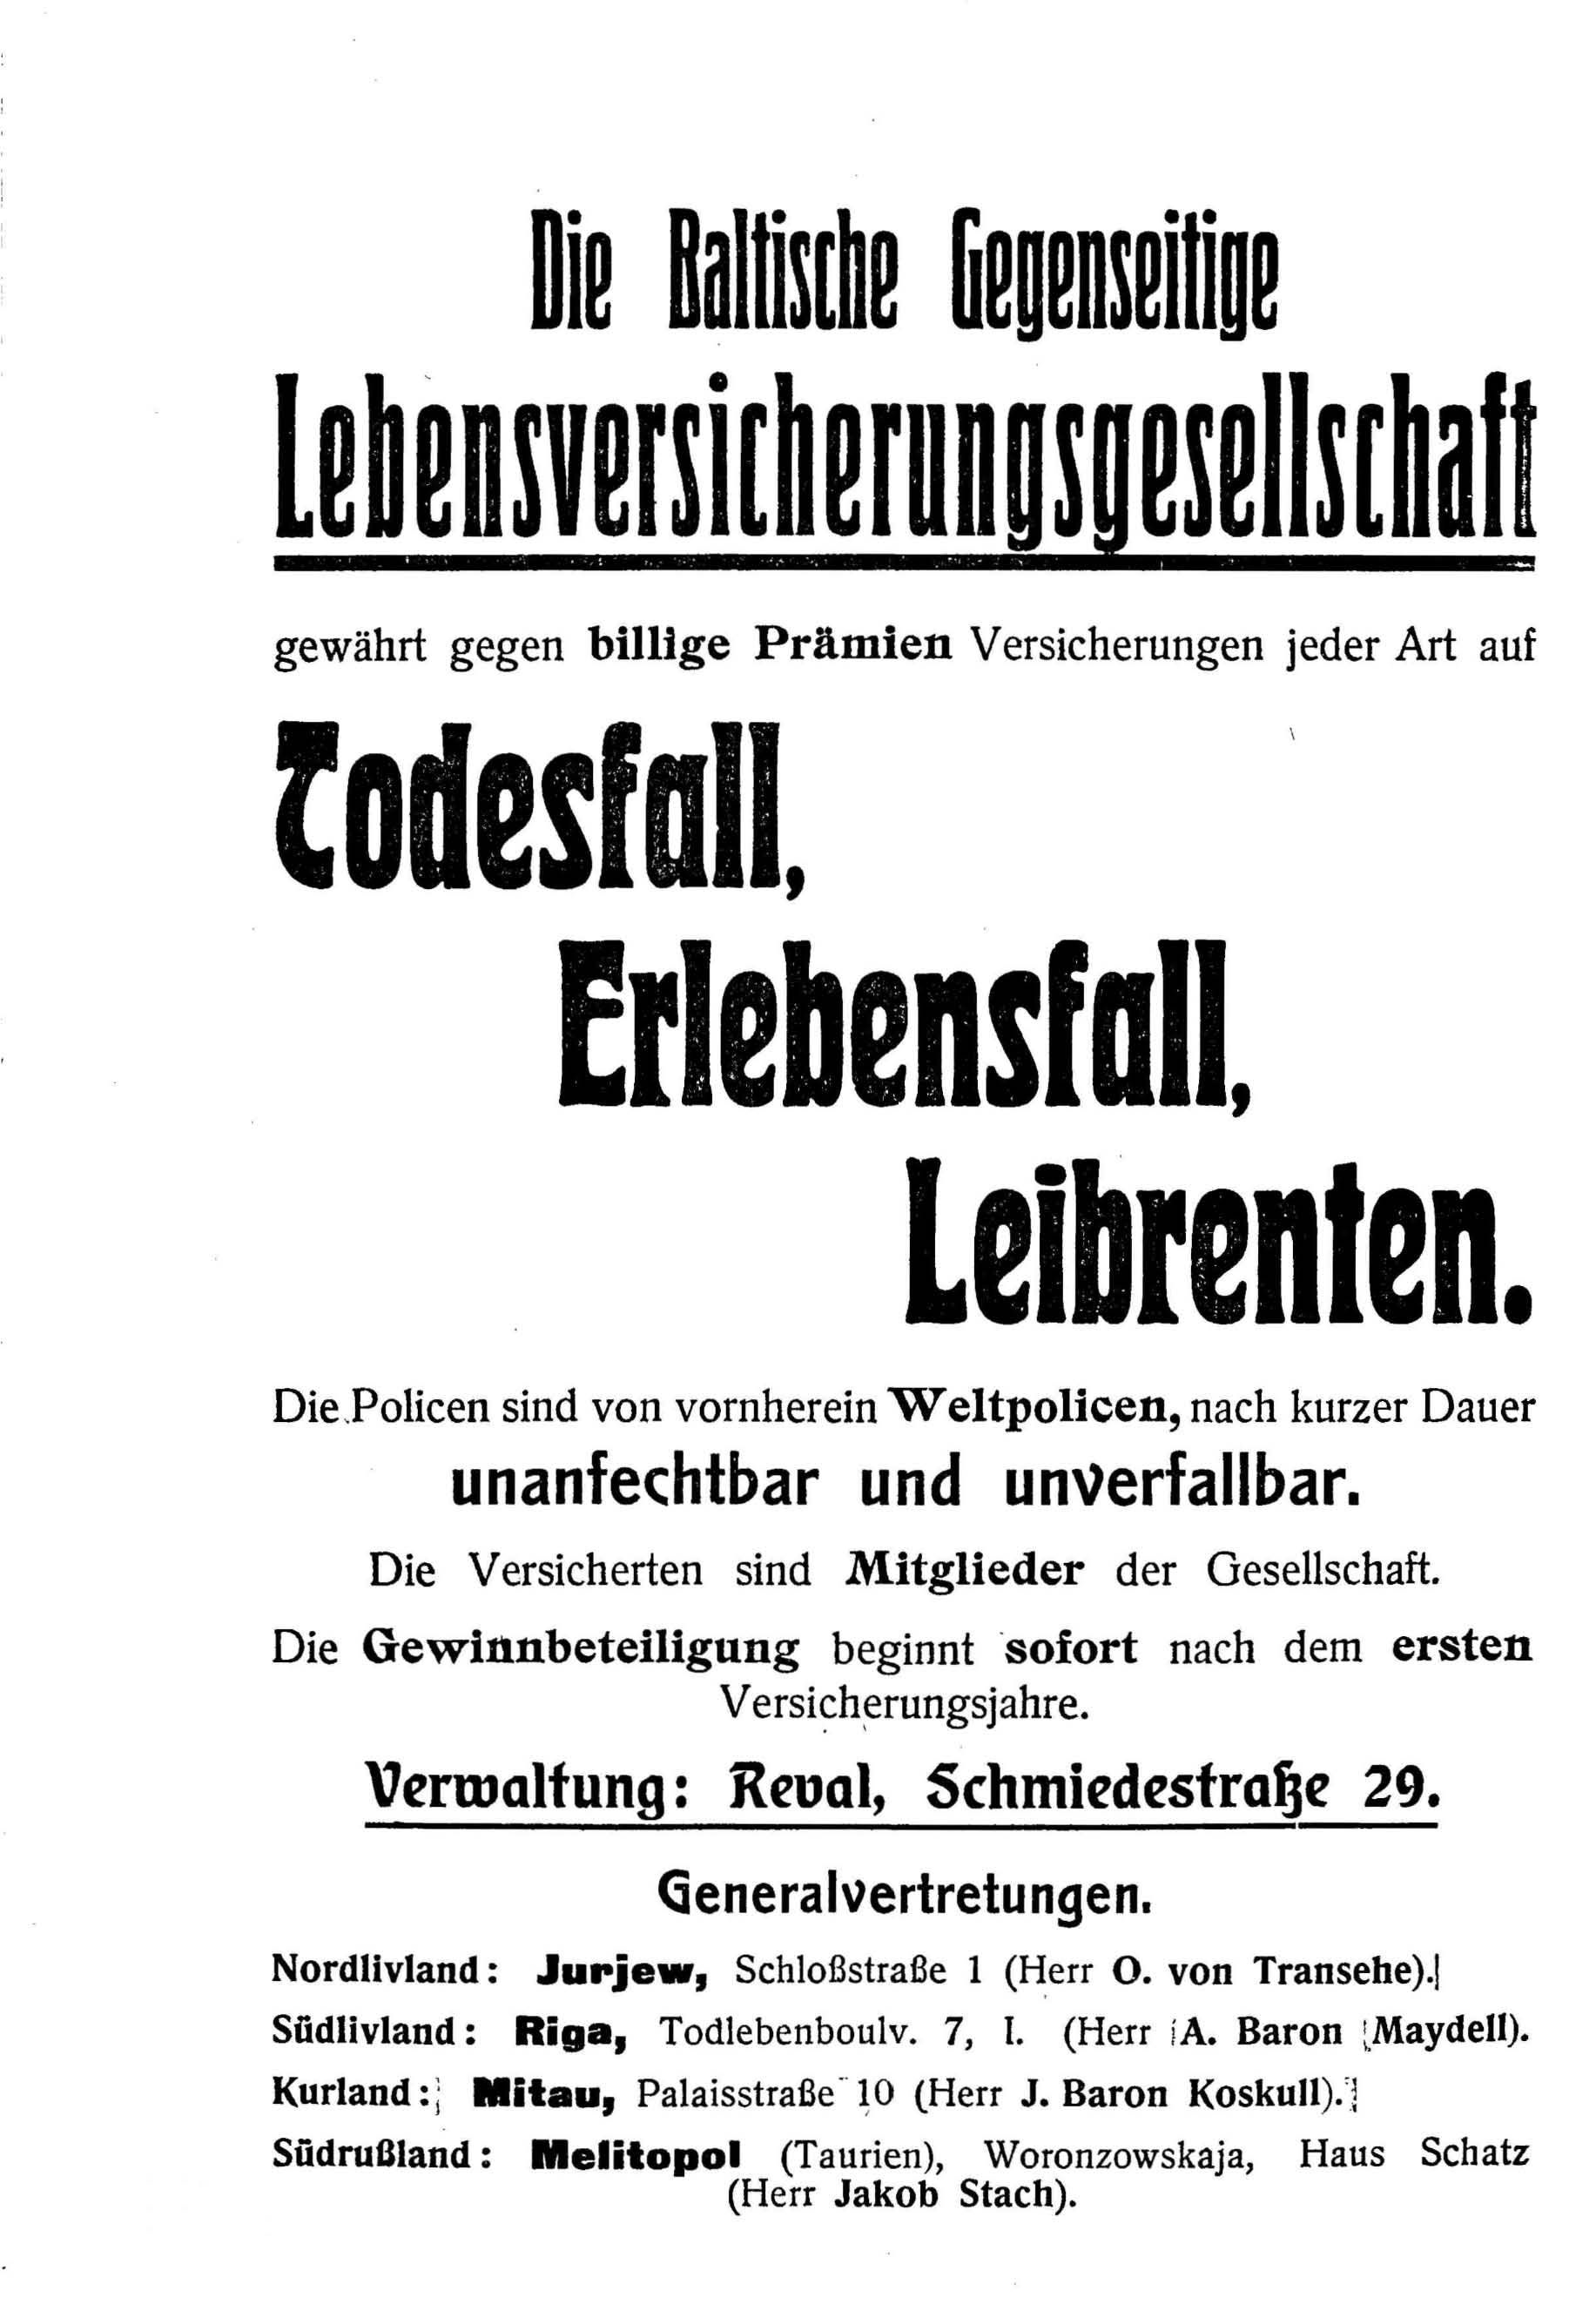 Deutsche Monatsschrift für Russland [4] (1915) | 246. (246) Main body of text